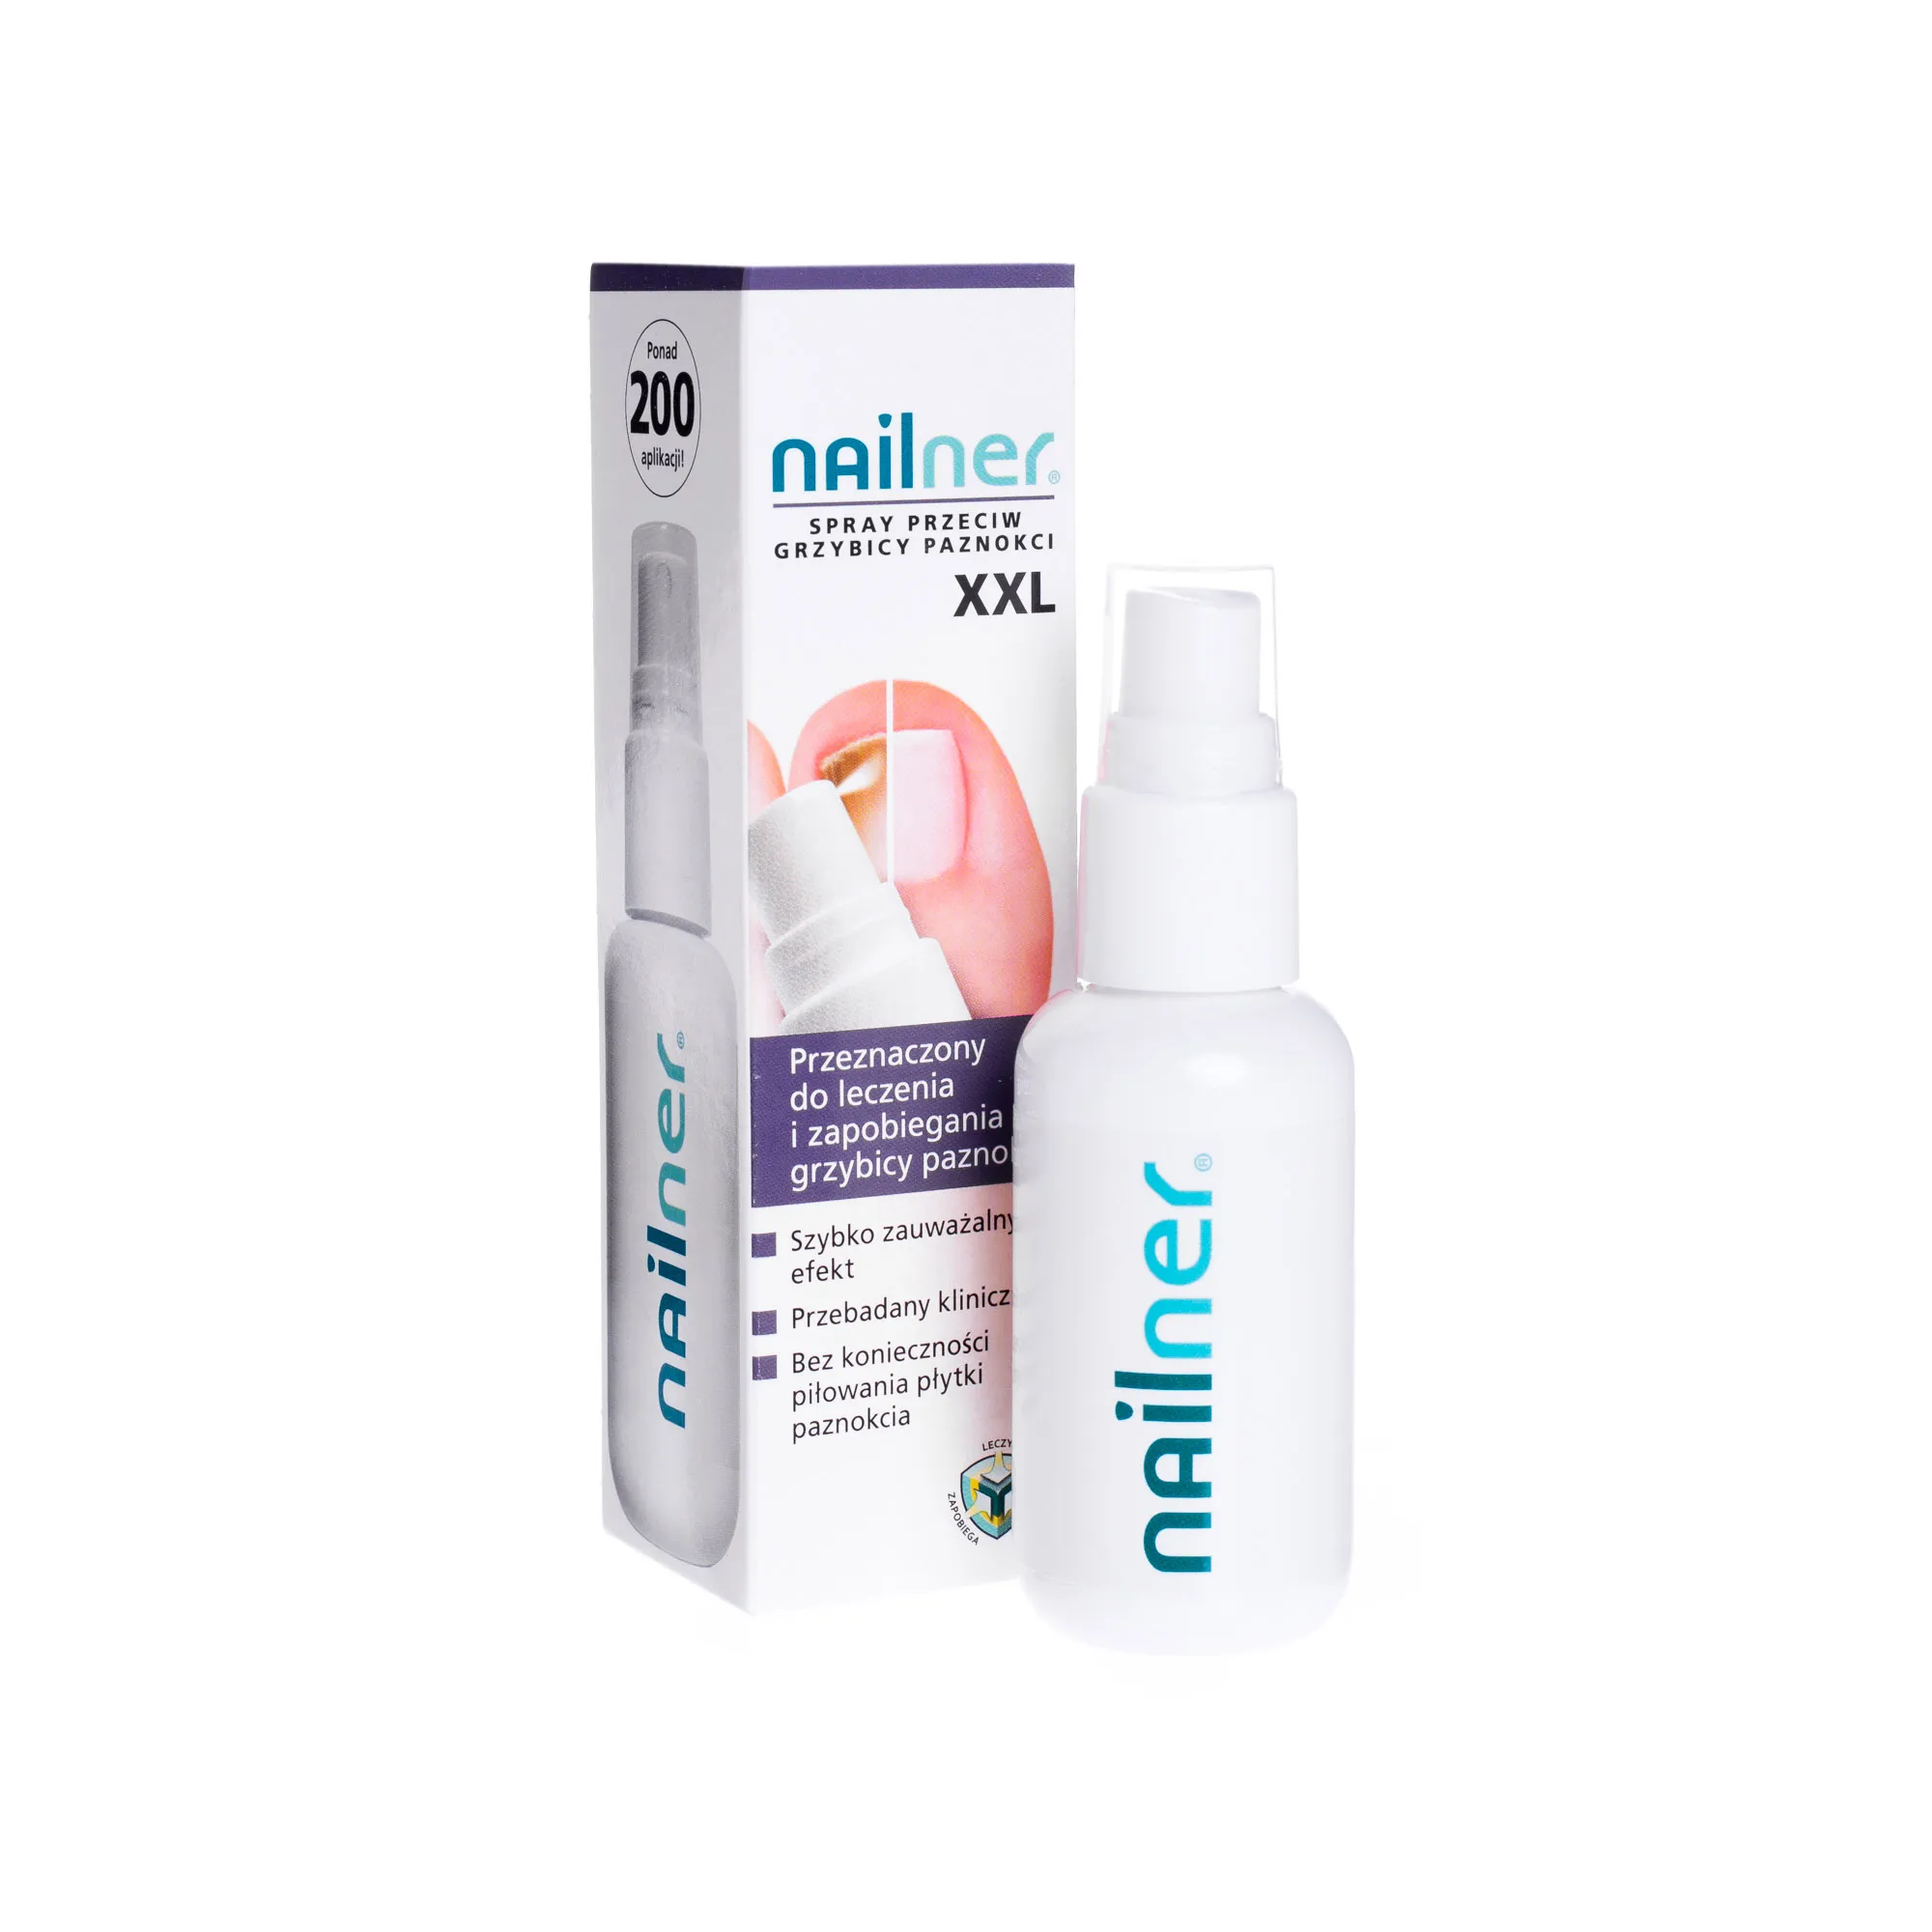 Nailner, spray przeciw grzybicy paznokci XXL, 35 ml